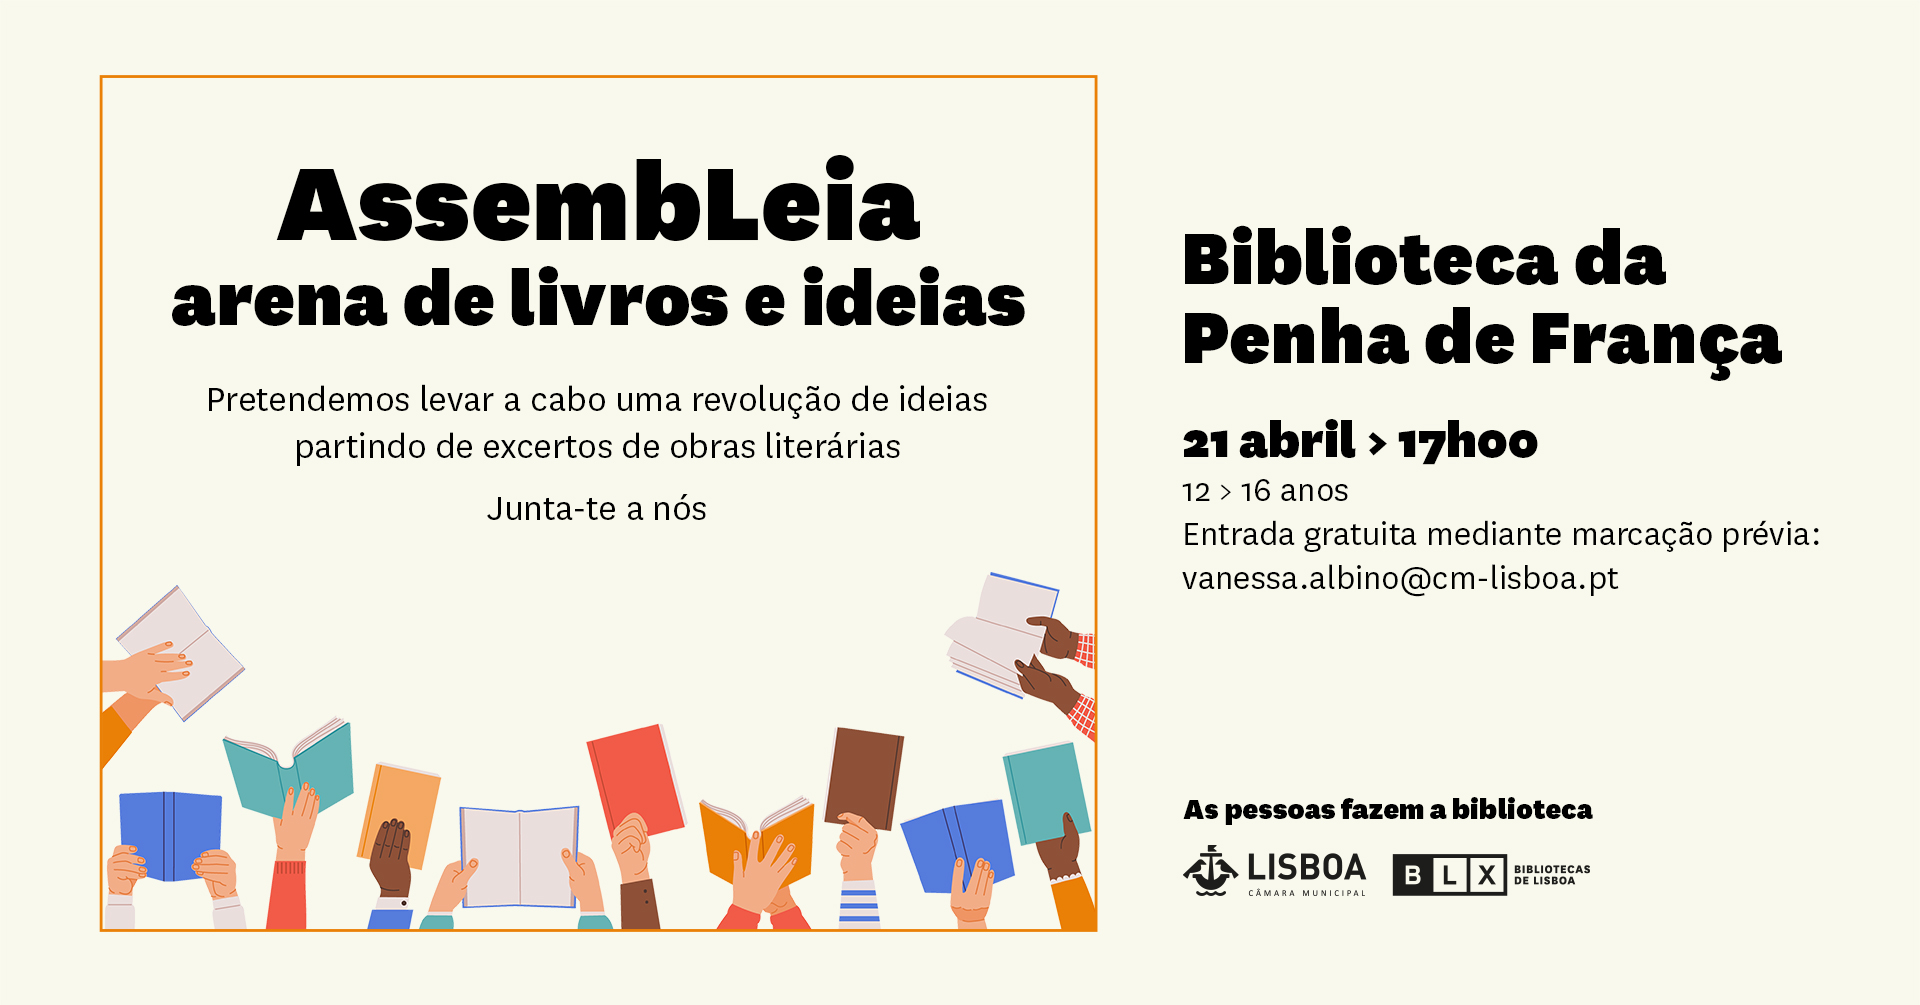 AssembLeia | arena de livros e ideias